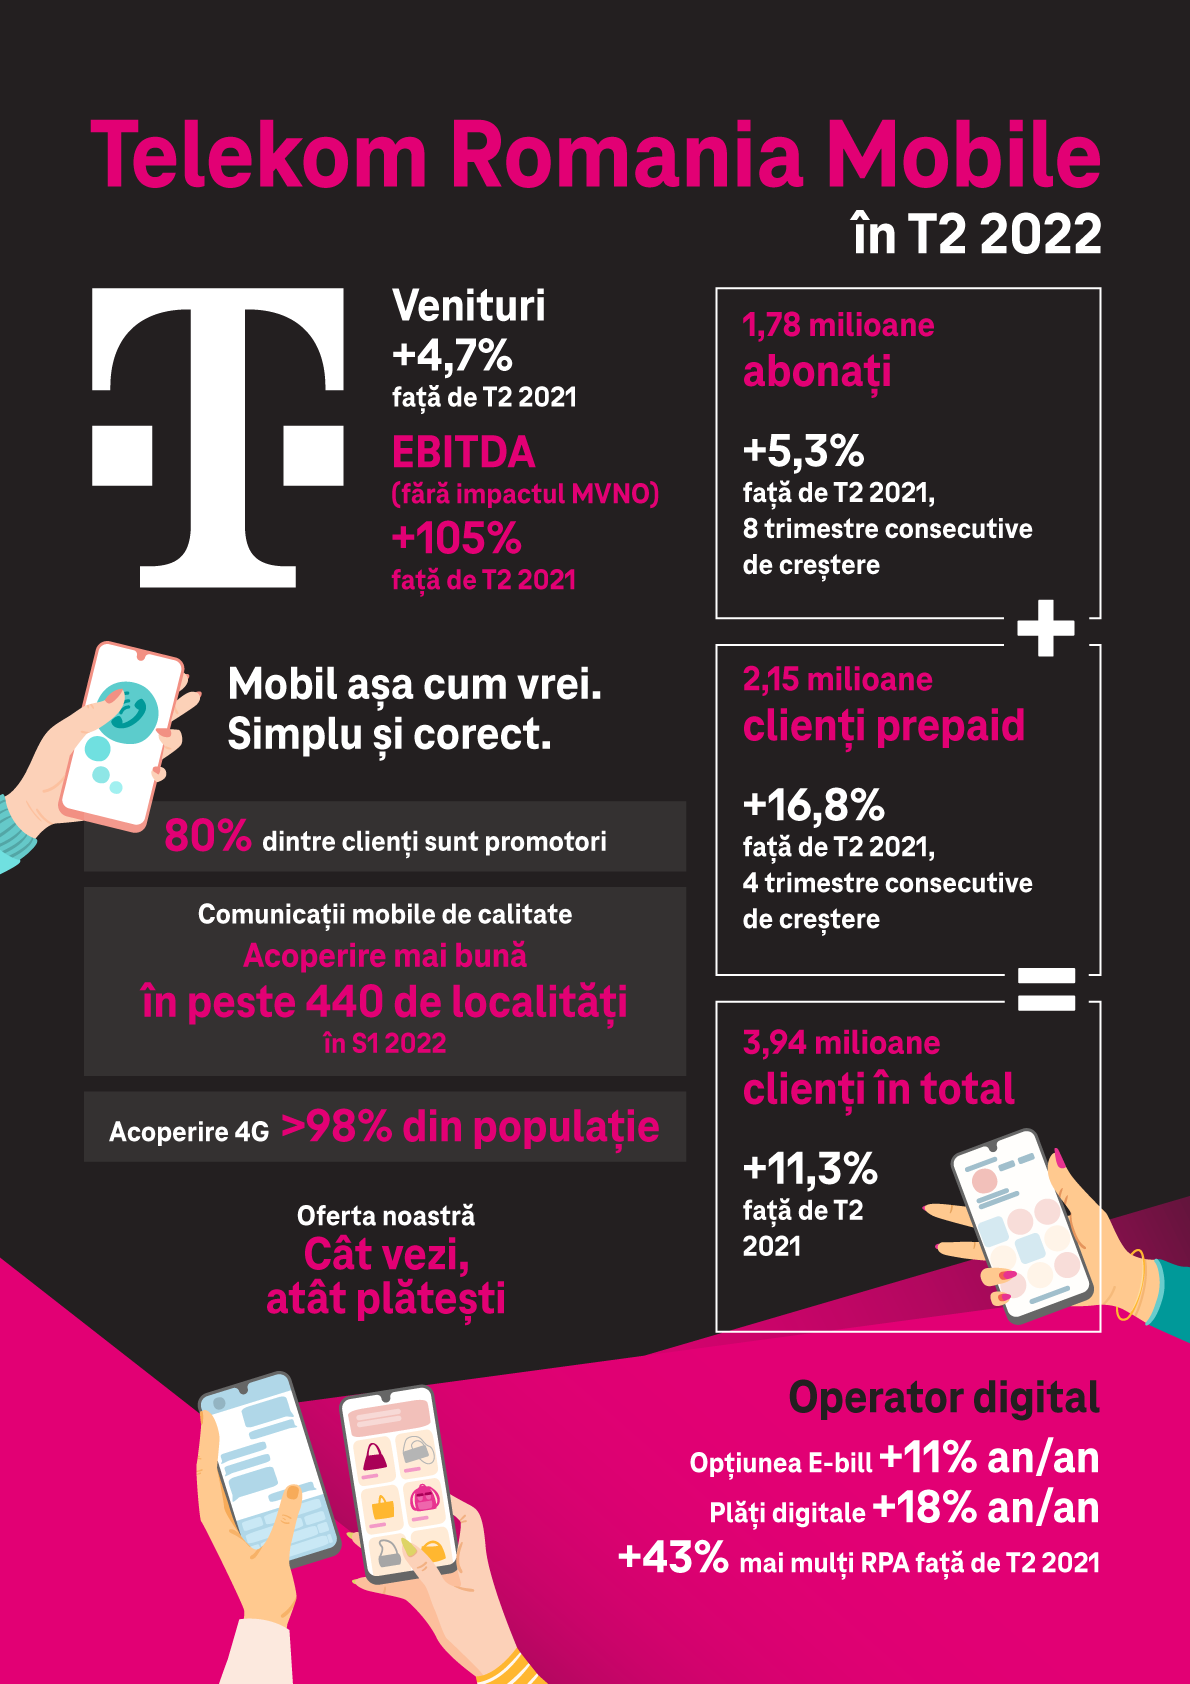 Telekom Romania Mobile continuă creșterea și în T2 2022